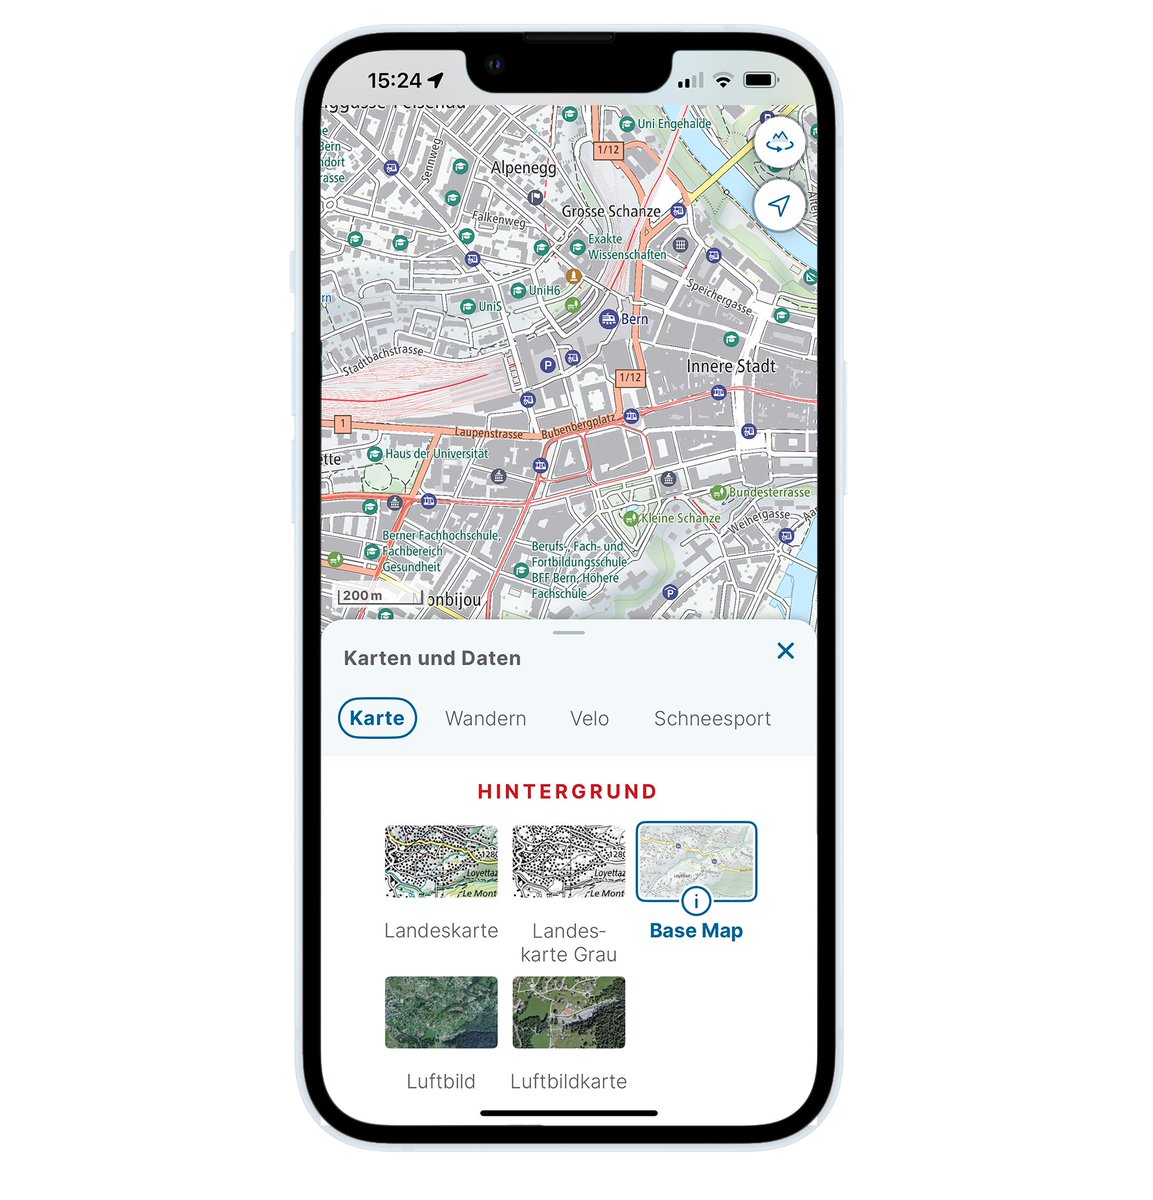 .@swisstopo erweitert die kostenlose swisstopo-App mit einer interaktiven Karte: Die «Base Map» ist für die mobile Nutzung optimiert, enthält viele Points of Interest mit Informationen & Echtzeitdaten und eignet sich besonders für Outdoor-Aktivitäten ➡️ bit.ly/49iEpdg